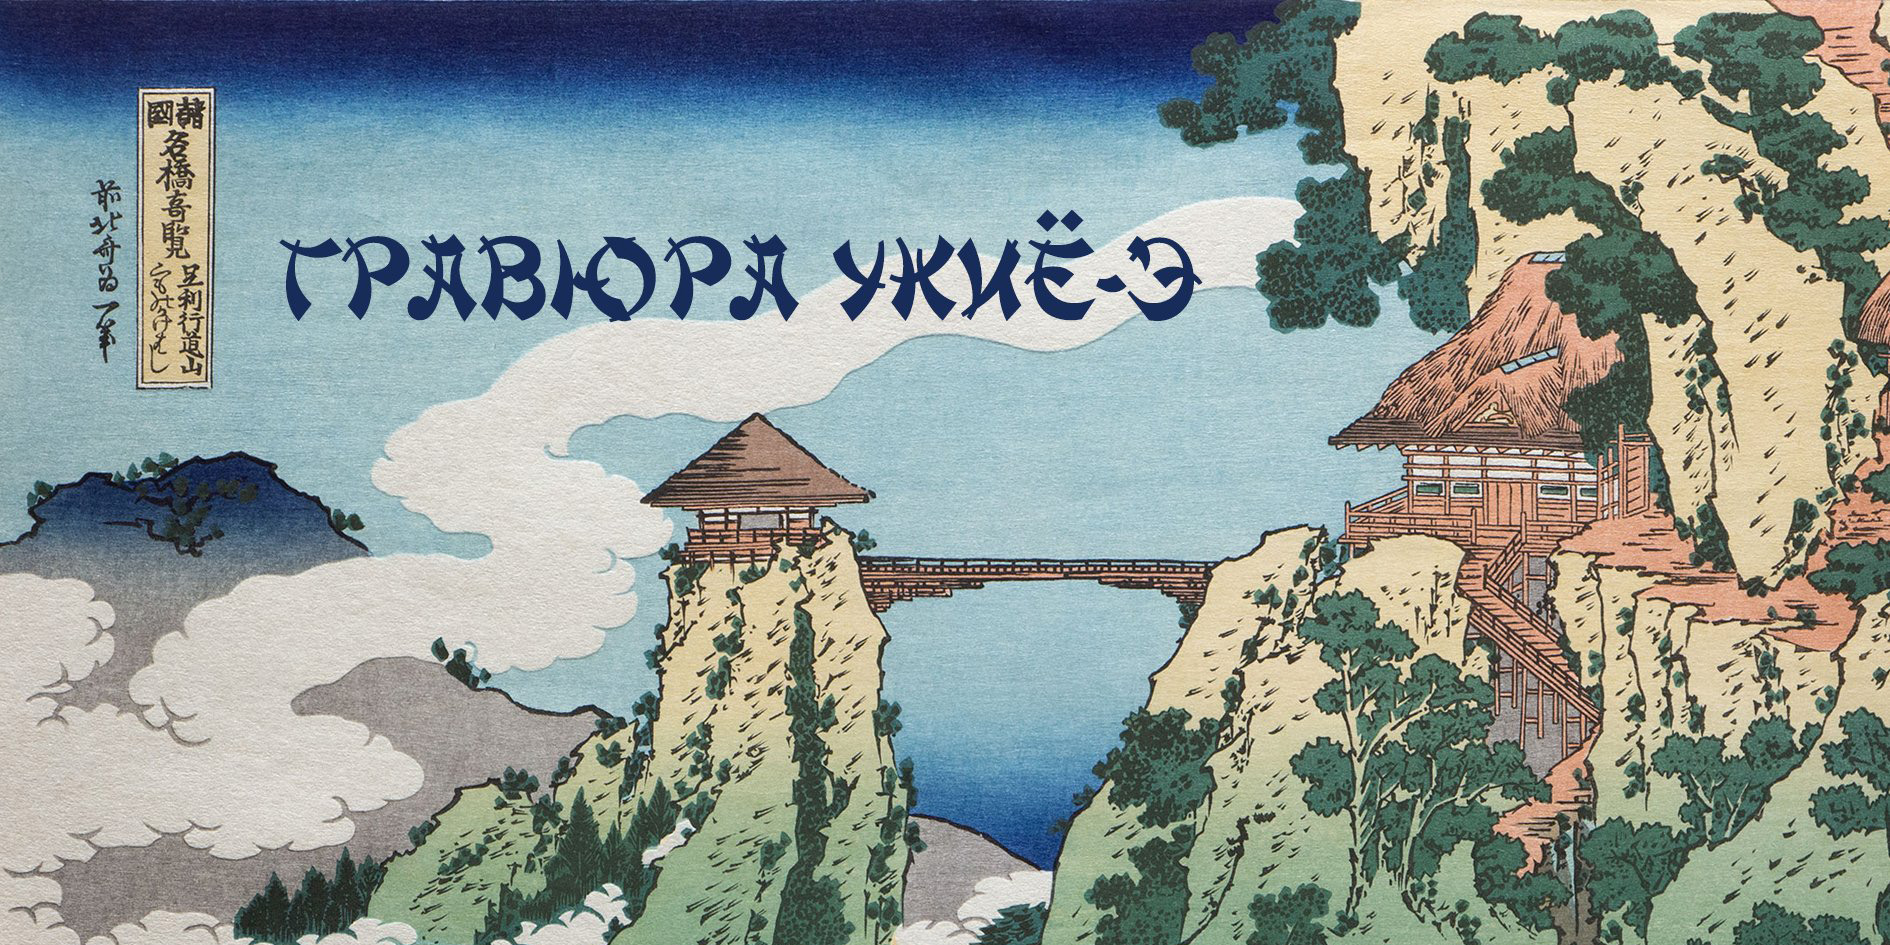 Могилевчан 18 марта приглашают на лекцию о японской гравюре укиё-э